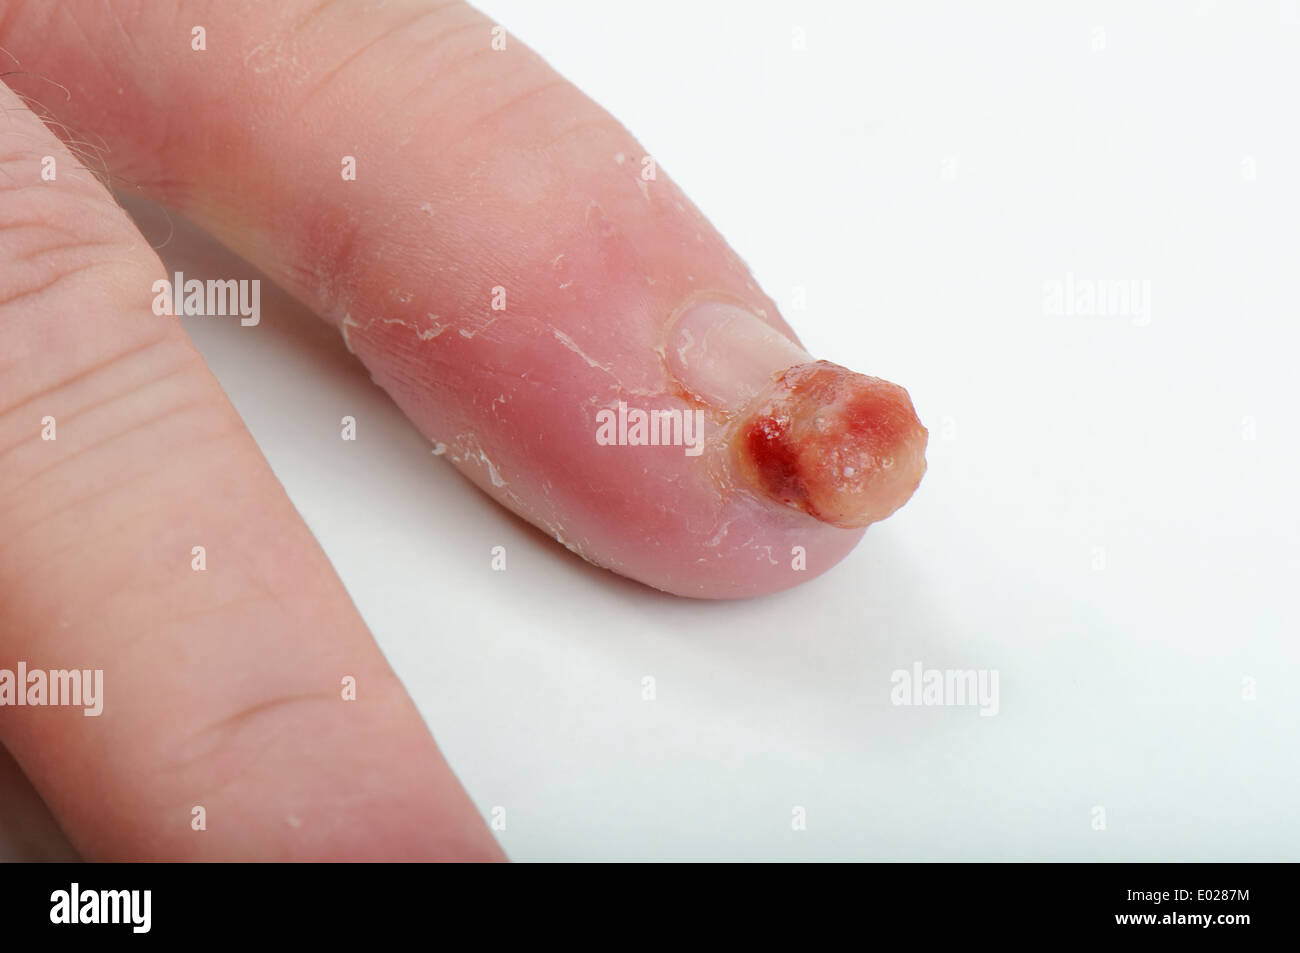 Virusinfektion des kleinen Fingers. Stockfoto